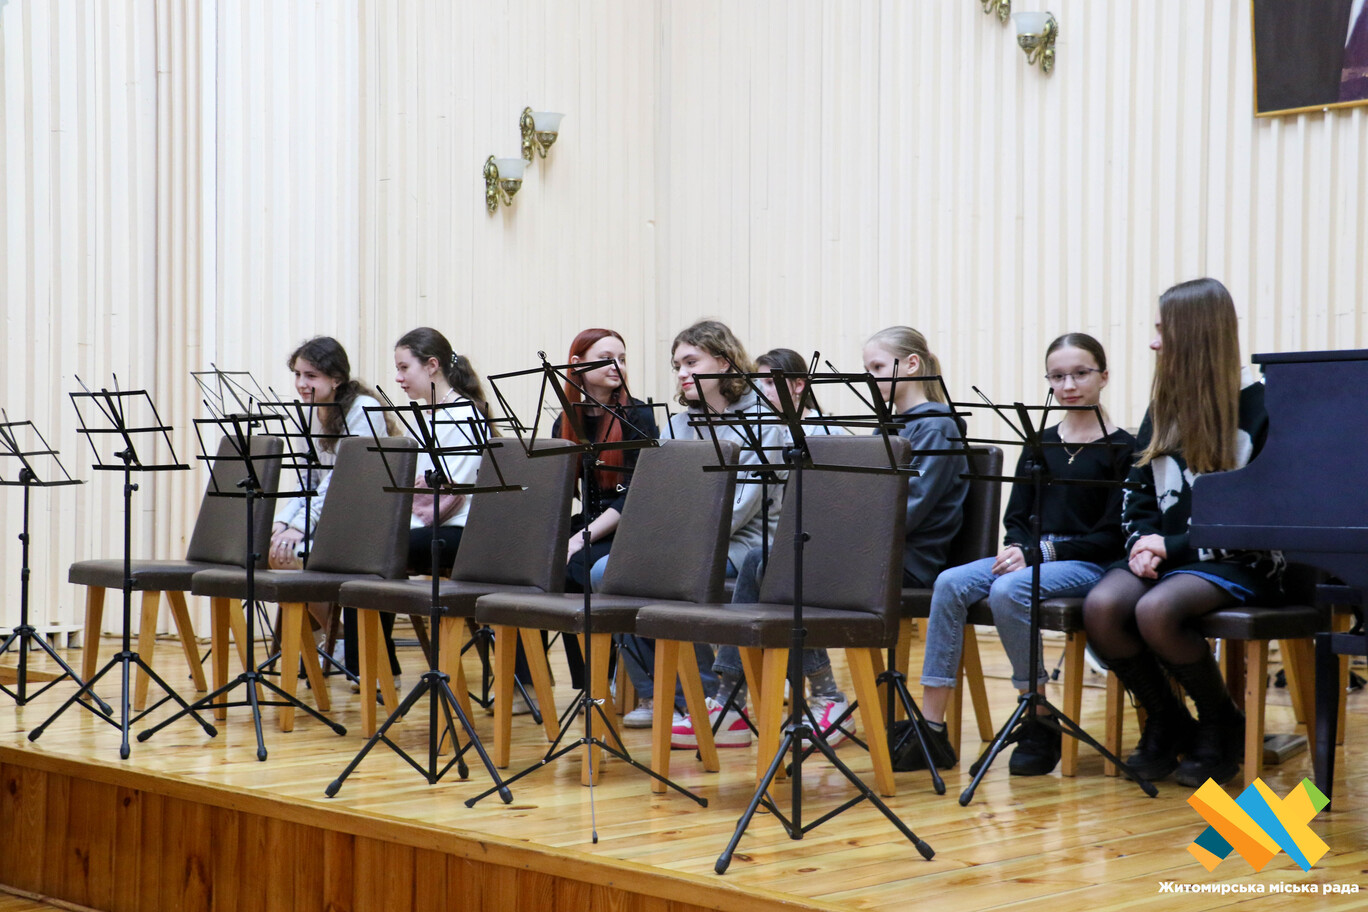 «Вже мріють про концертний тур та вірять, що оркестр буде крутим» – у Житомирі створено перший міський дитячий оркестр